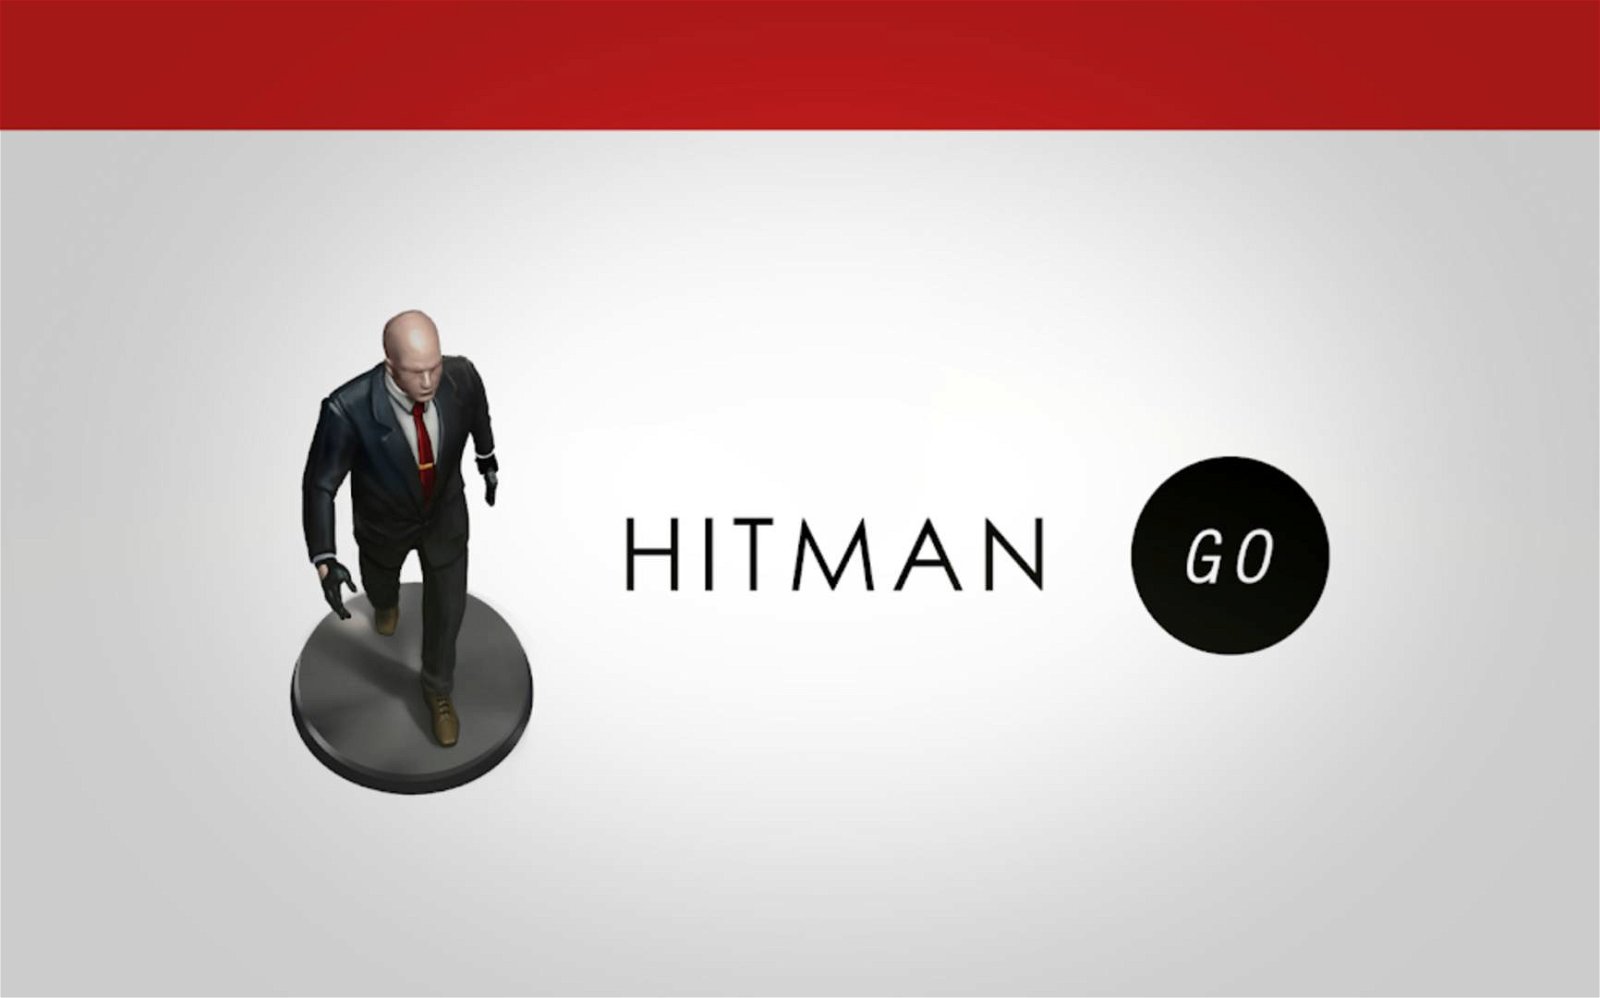 Immagine di Hitman GO scaricabile gratuitamente su Android e iOS!